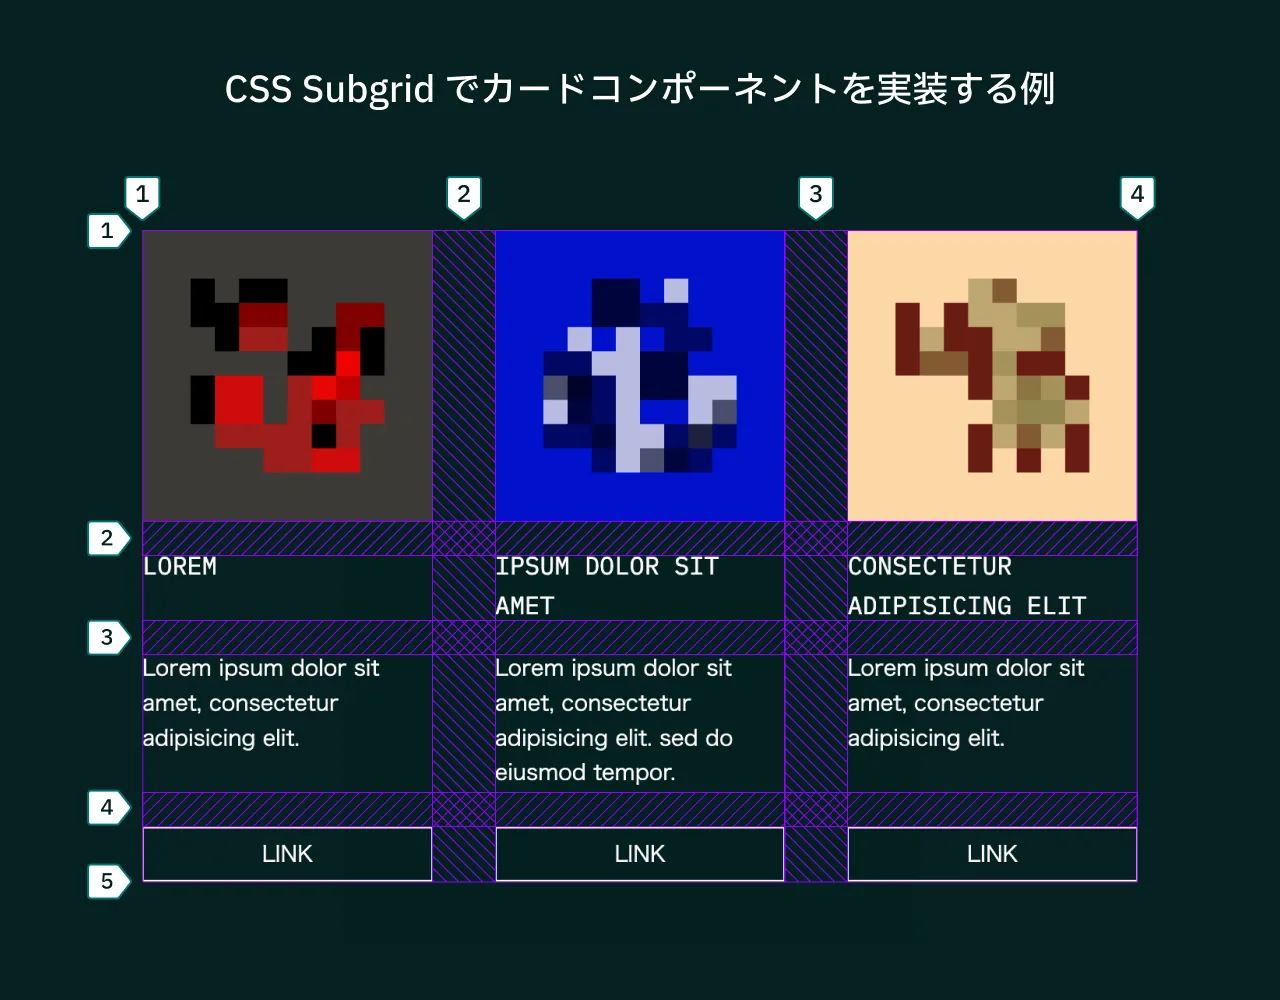 CSS Subgrid でカードコンポーネントを実装する例